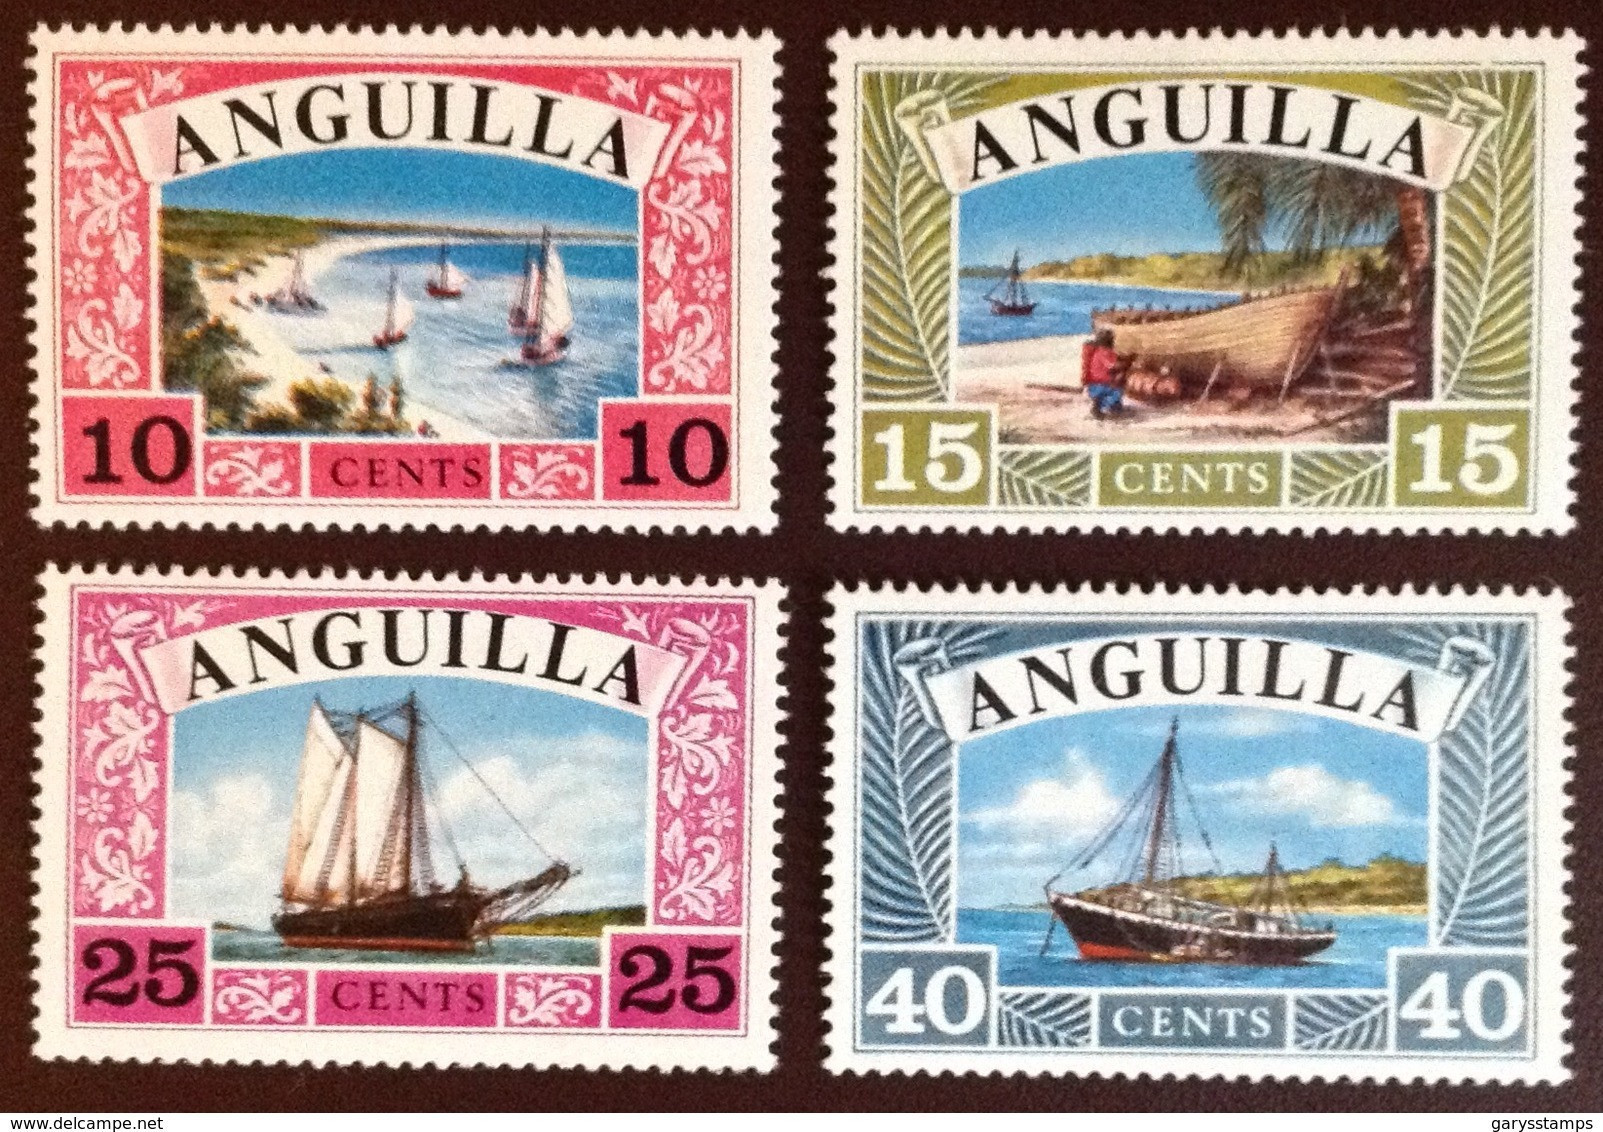 Anguilla 1968 Ships MNH - Anguilla (1968-...)